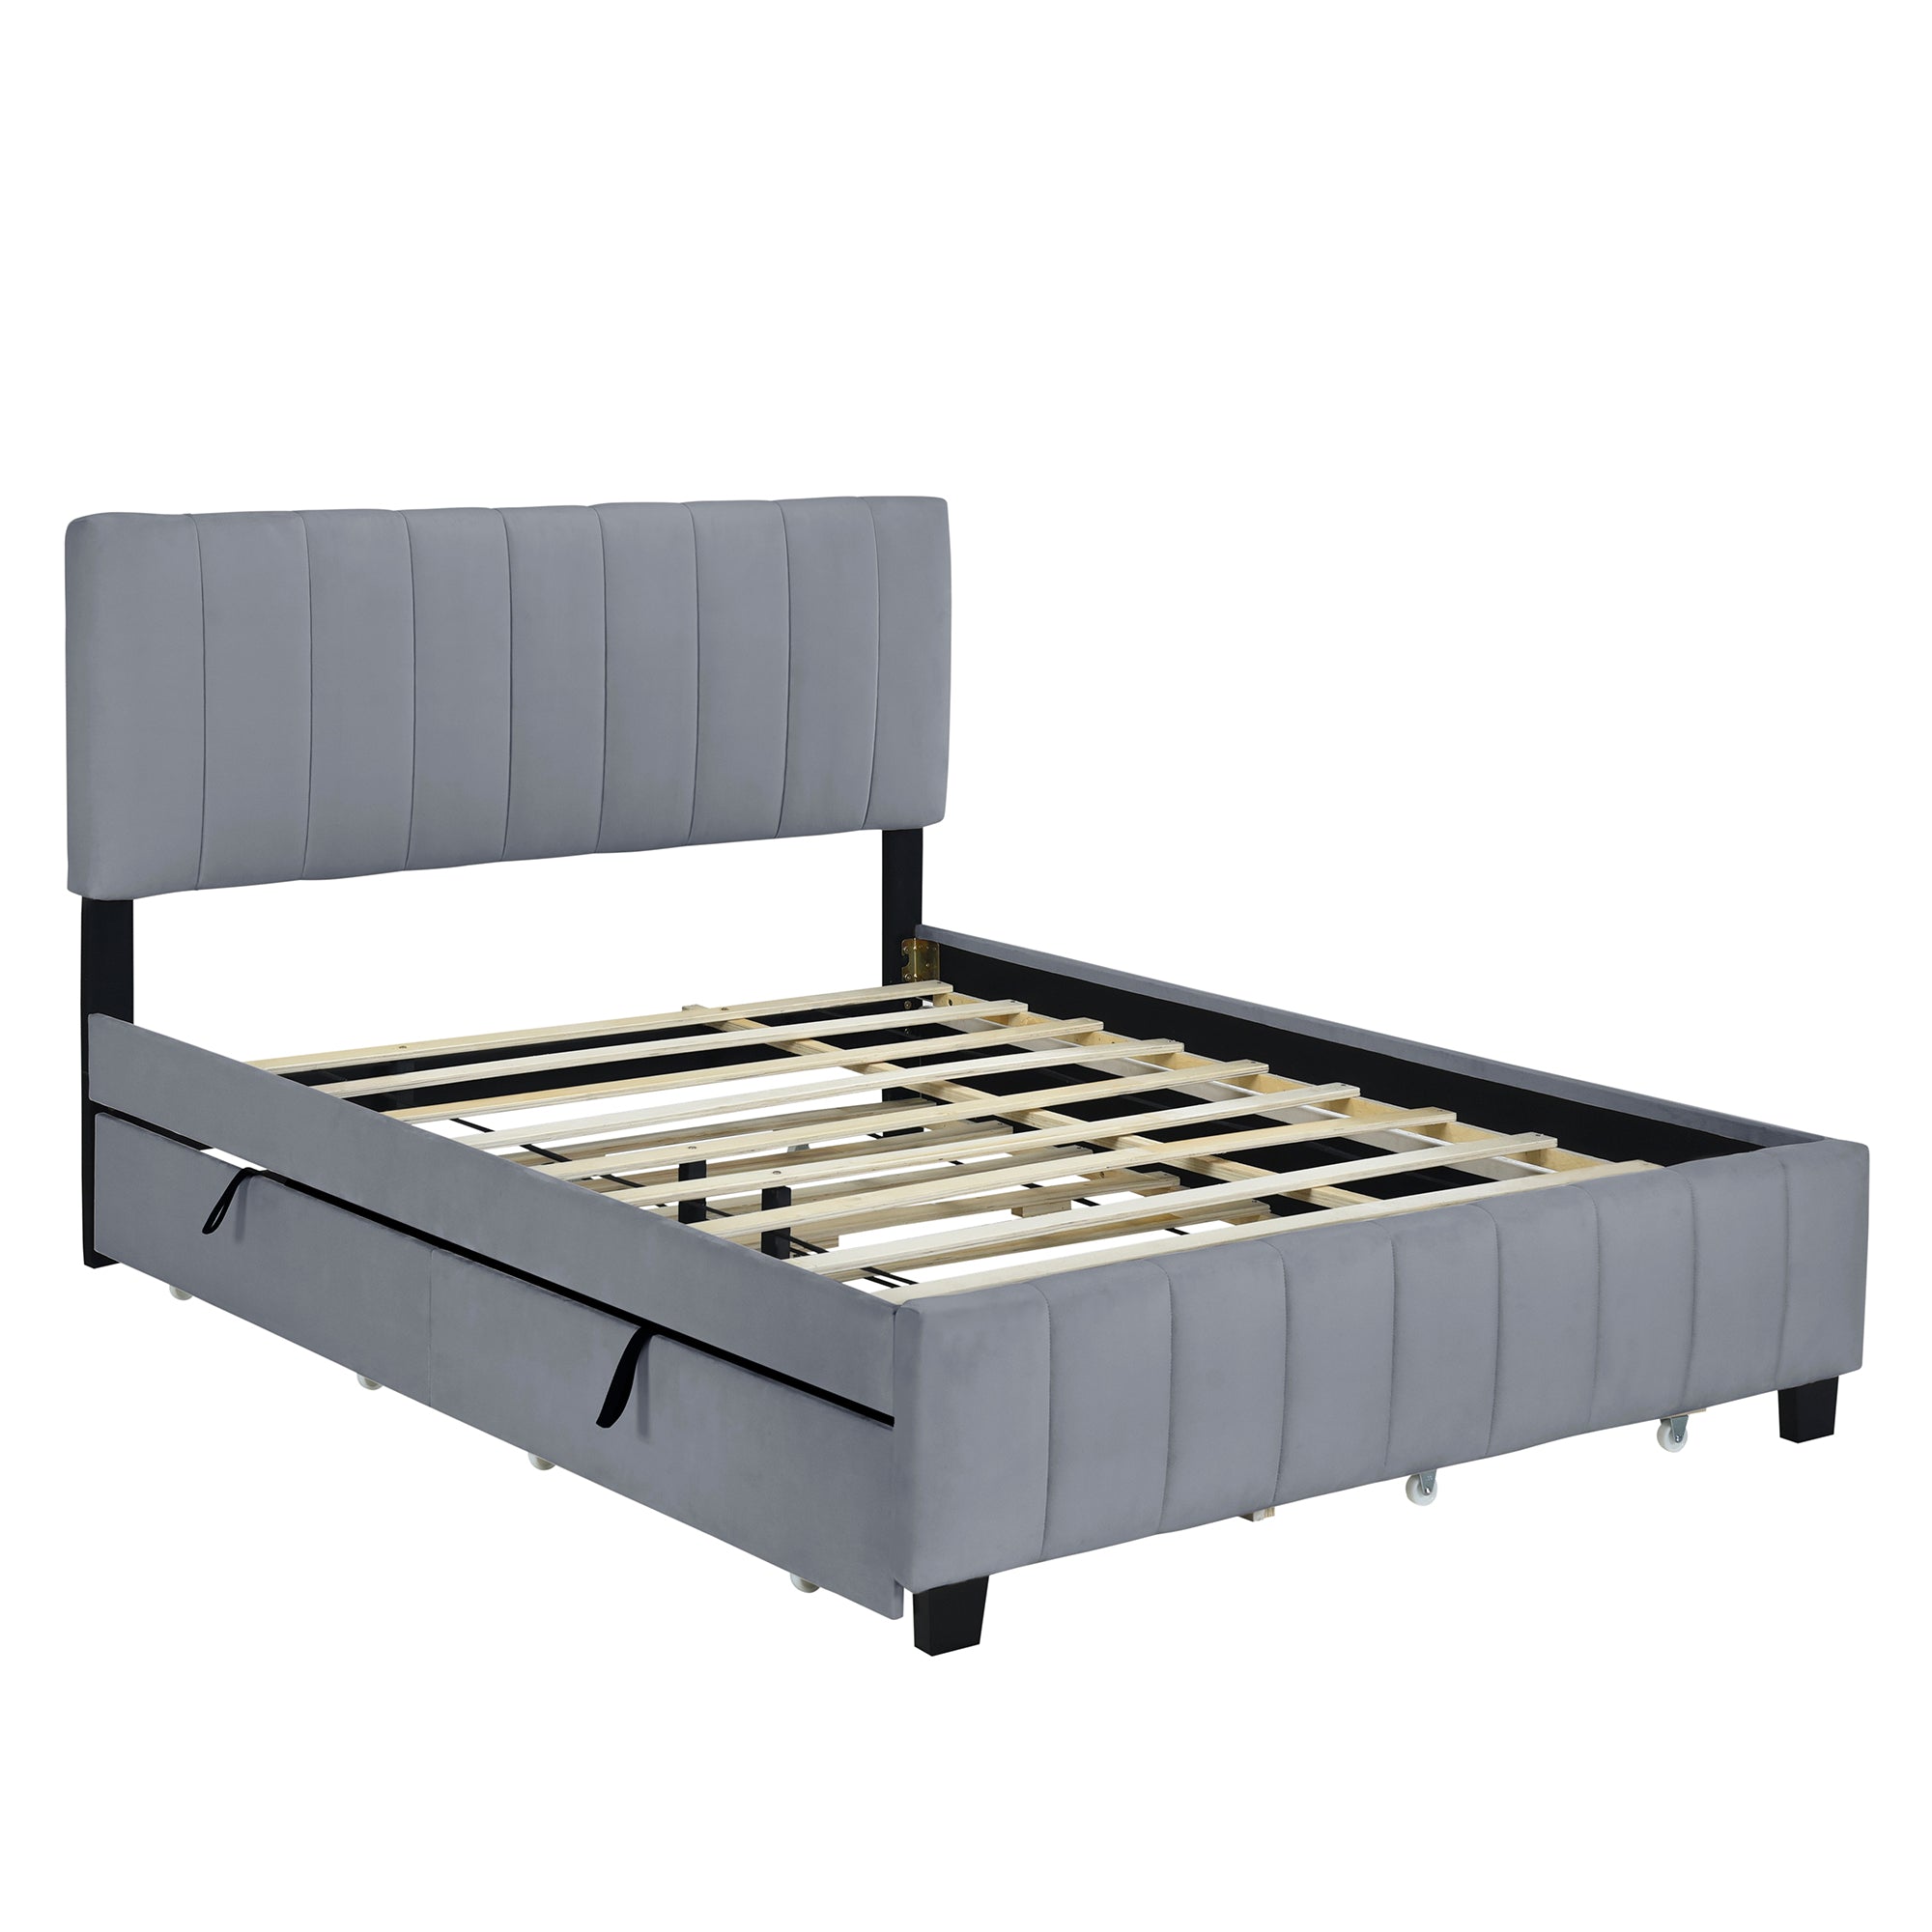 Bellemave Velvet Upholstered Platform Bed w/2 Drawers and 1 Twin XL Trundle - Bellemave